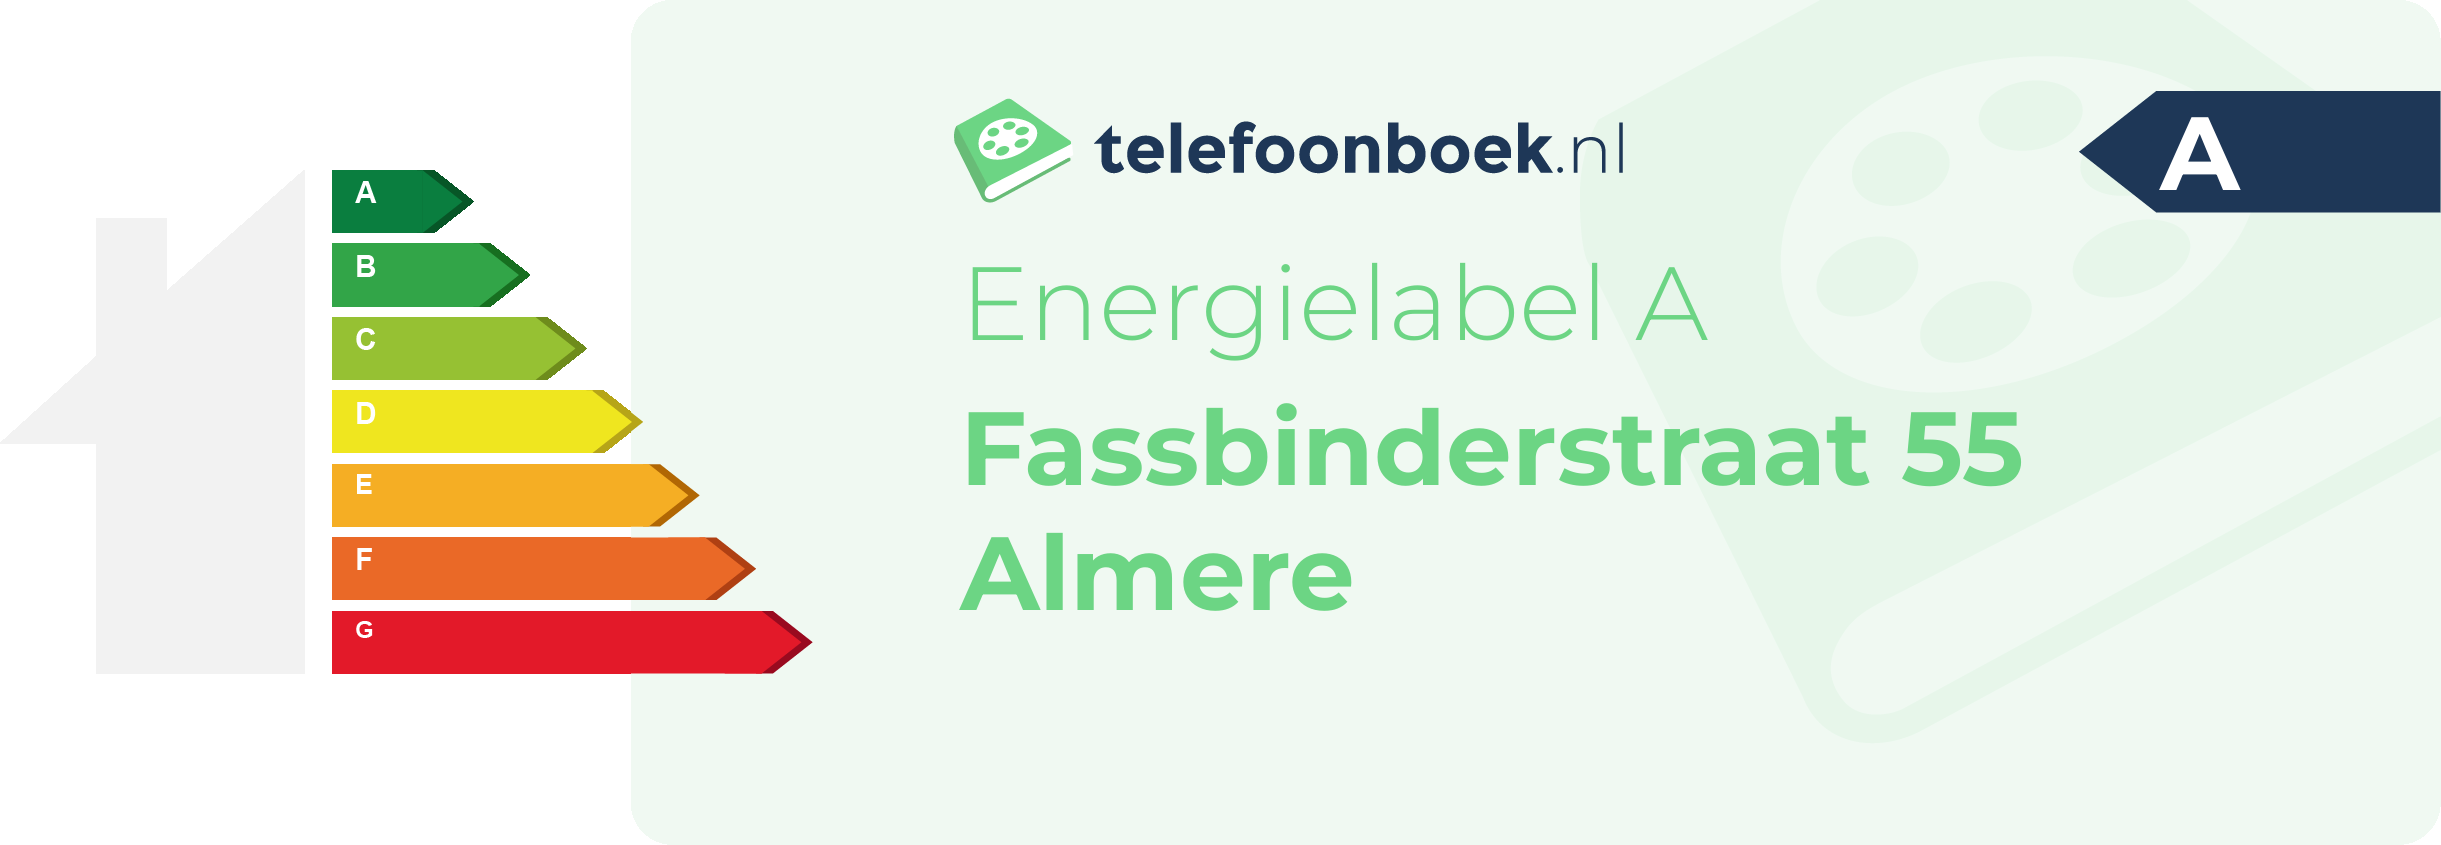 Energielabel Fassbinderstraat 55 Almere